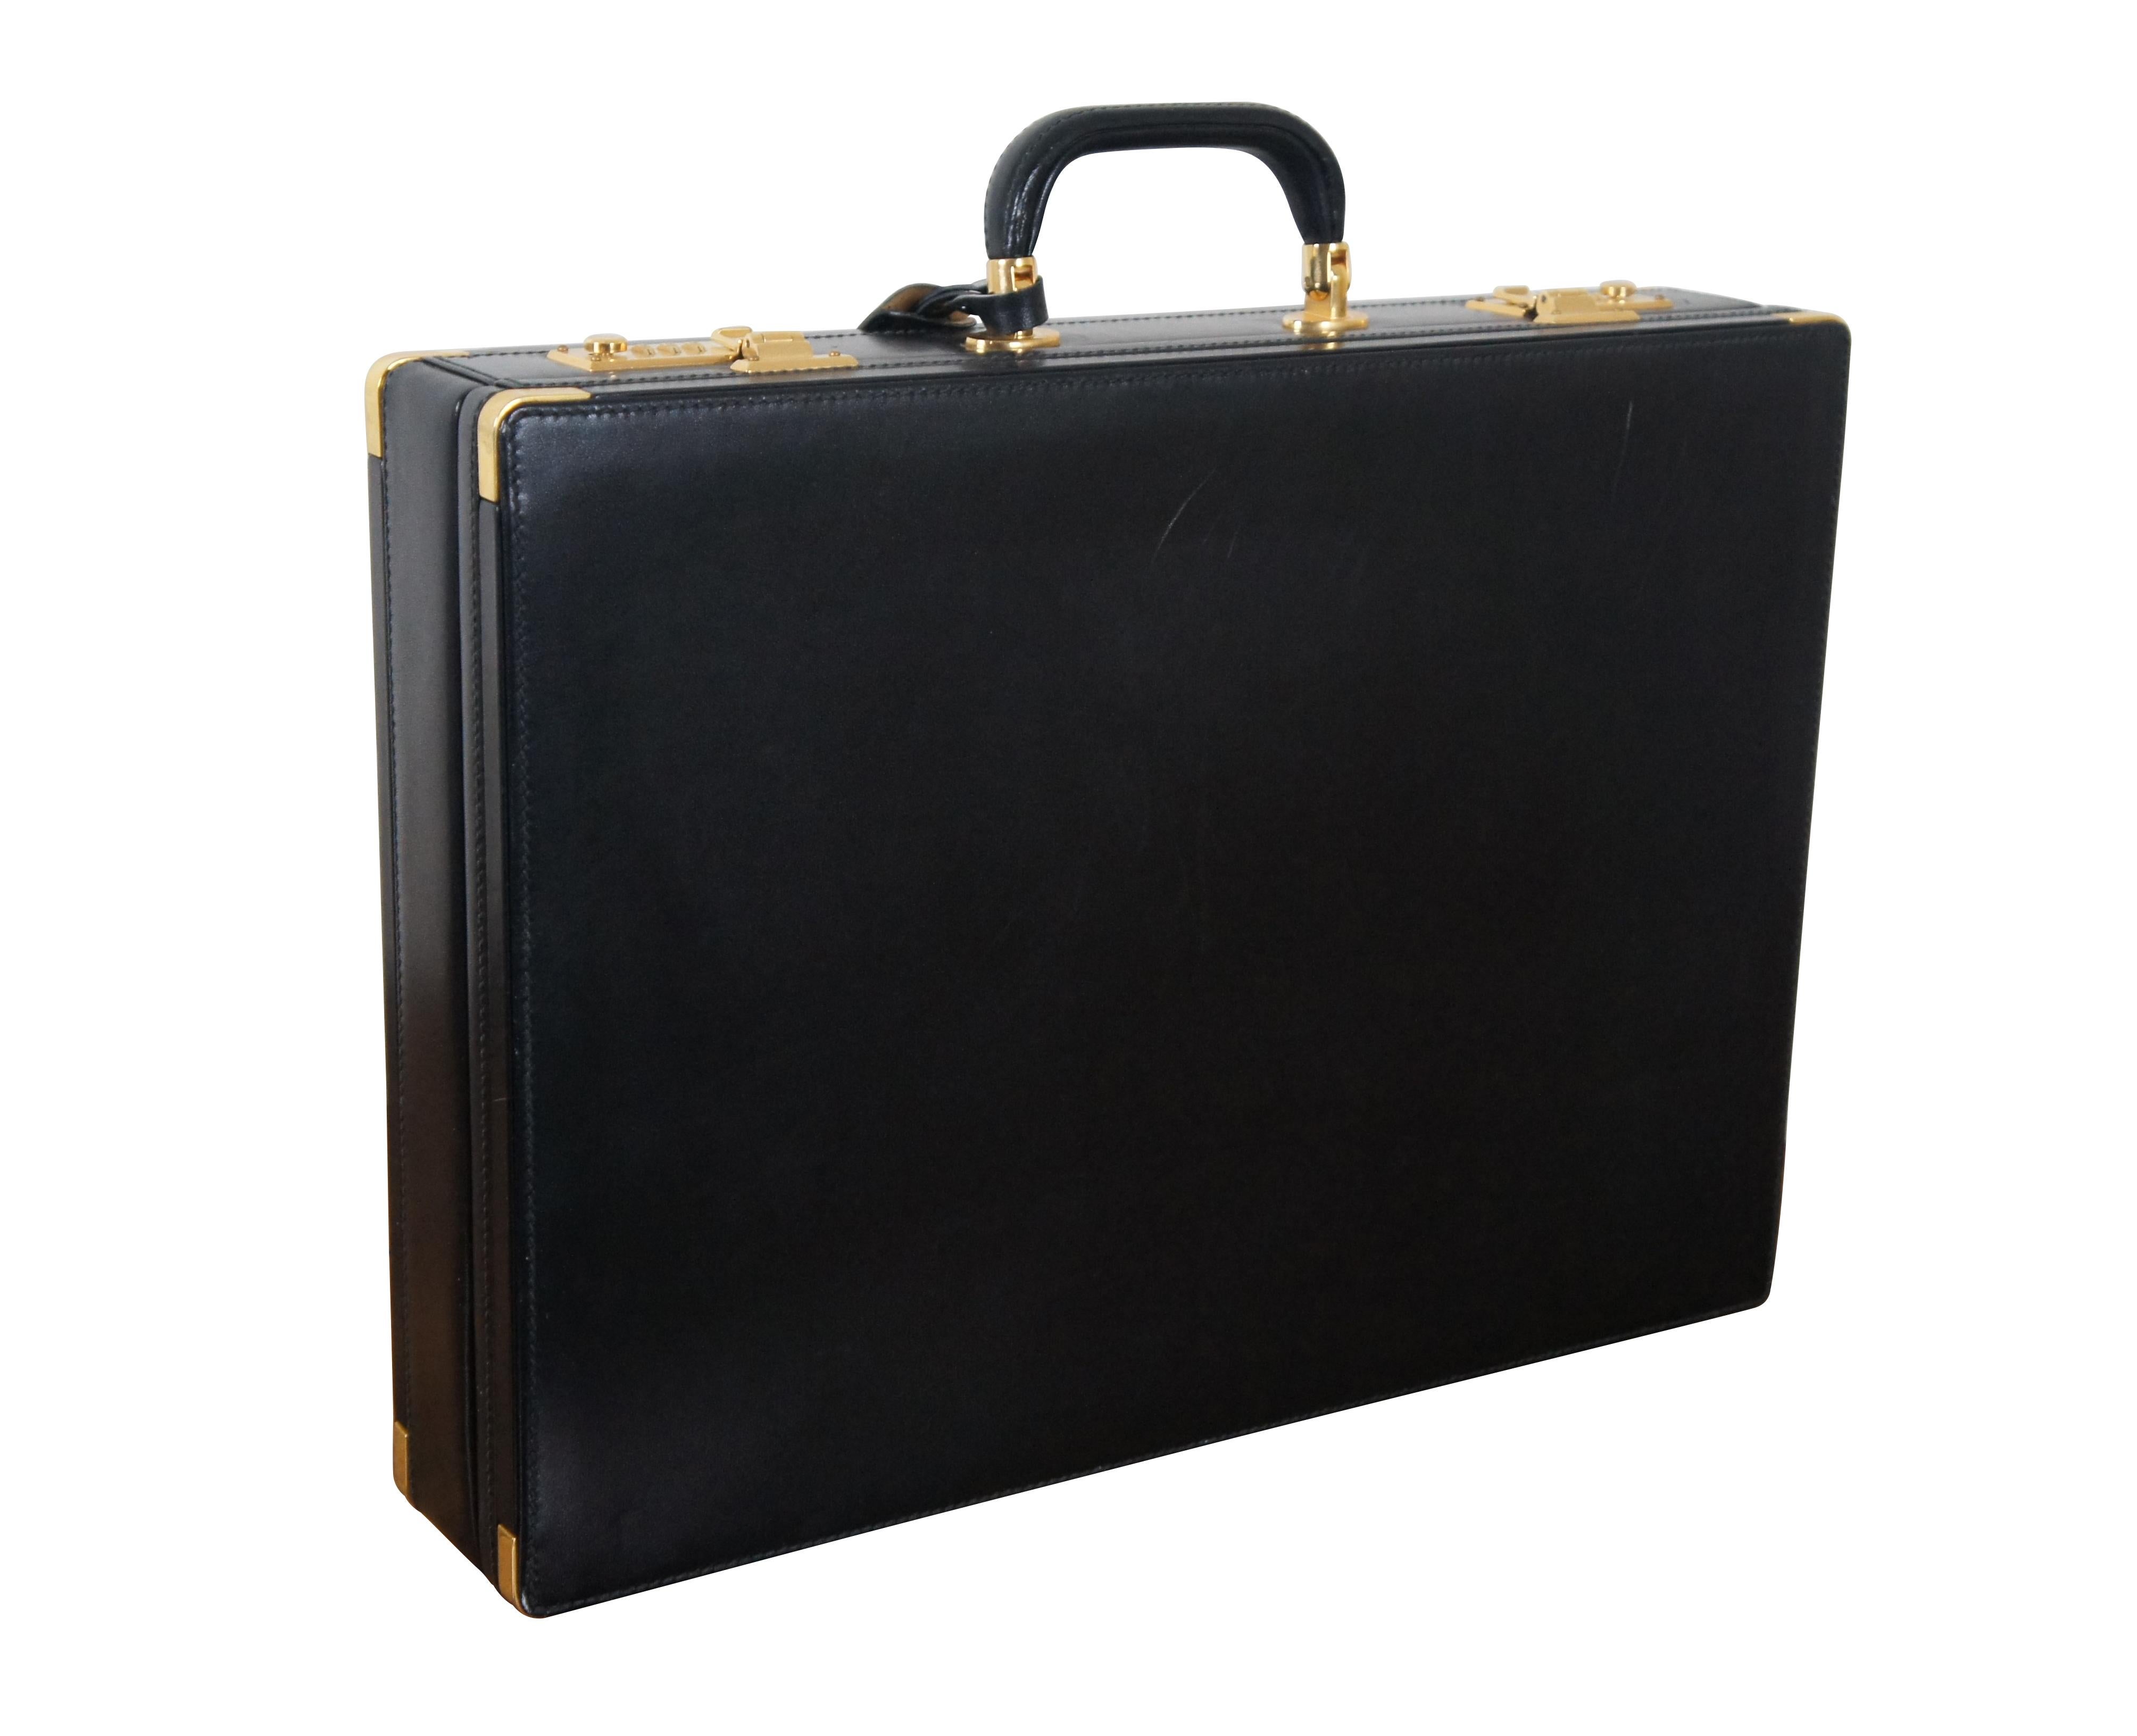 bally briefcase